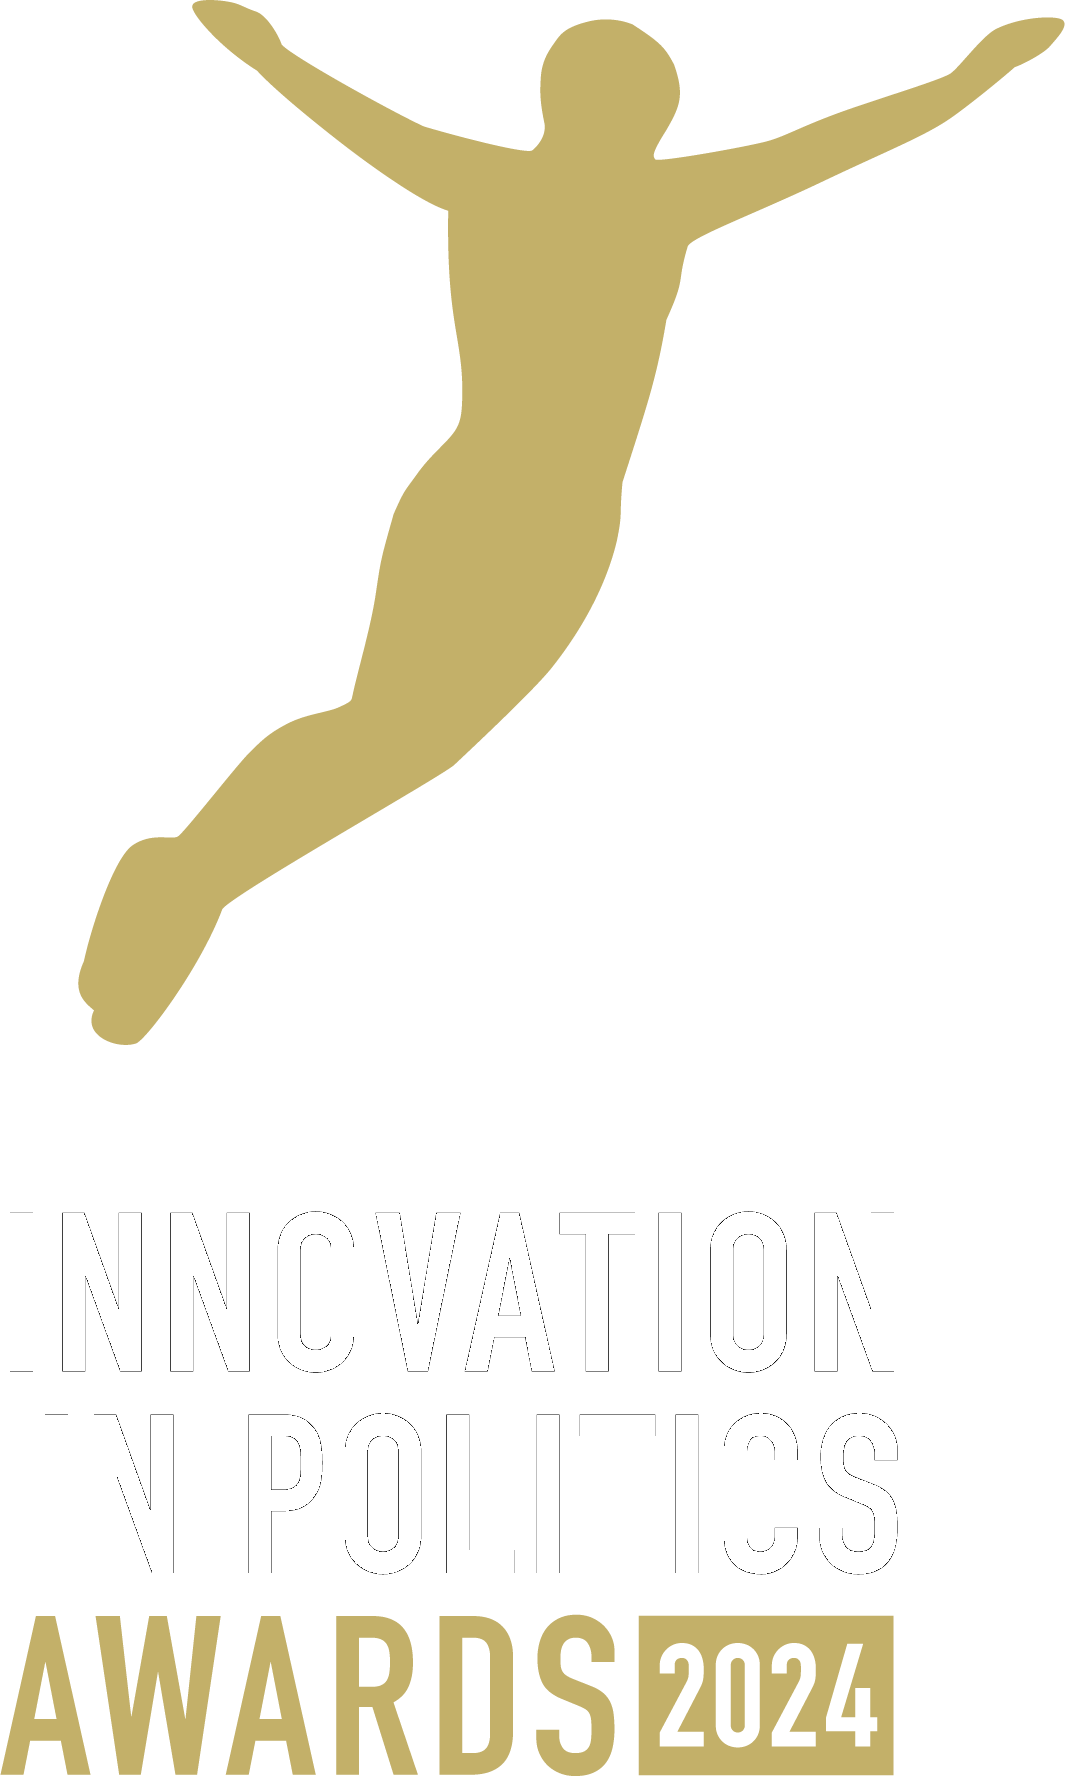 Innovation in politics awards 2024